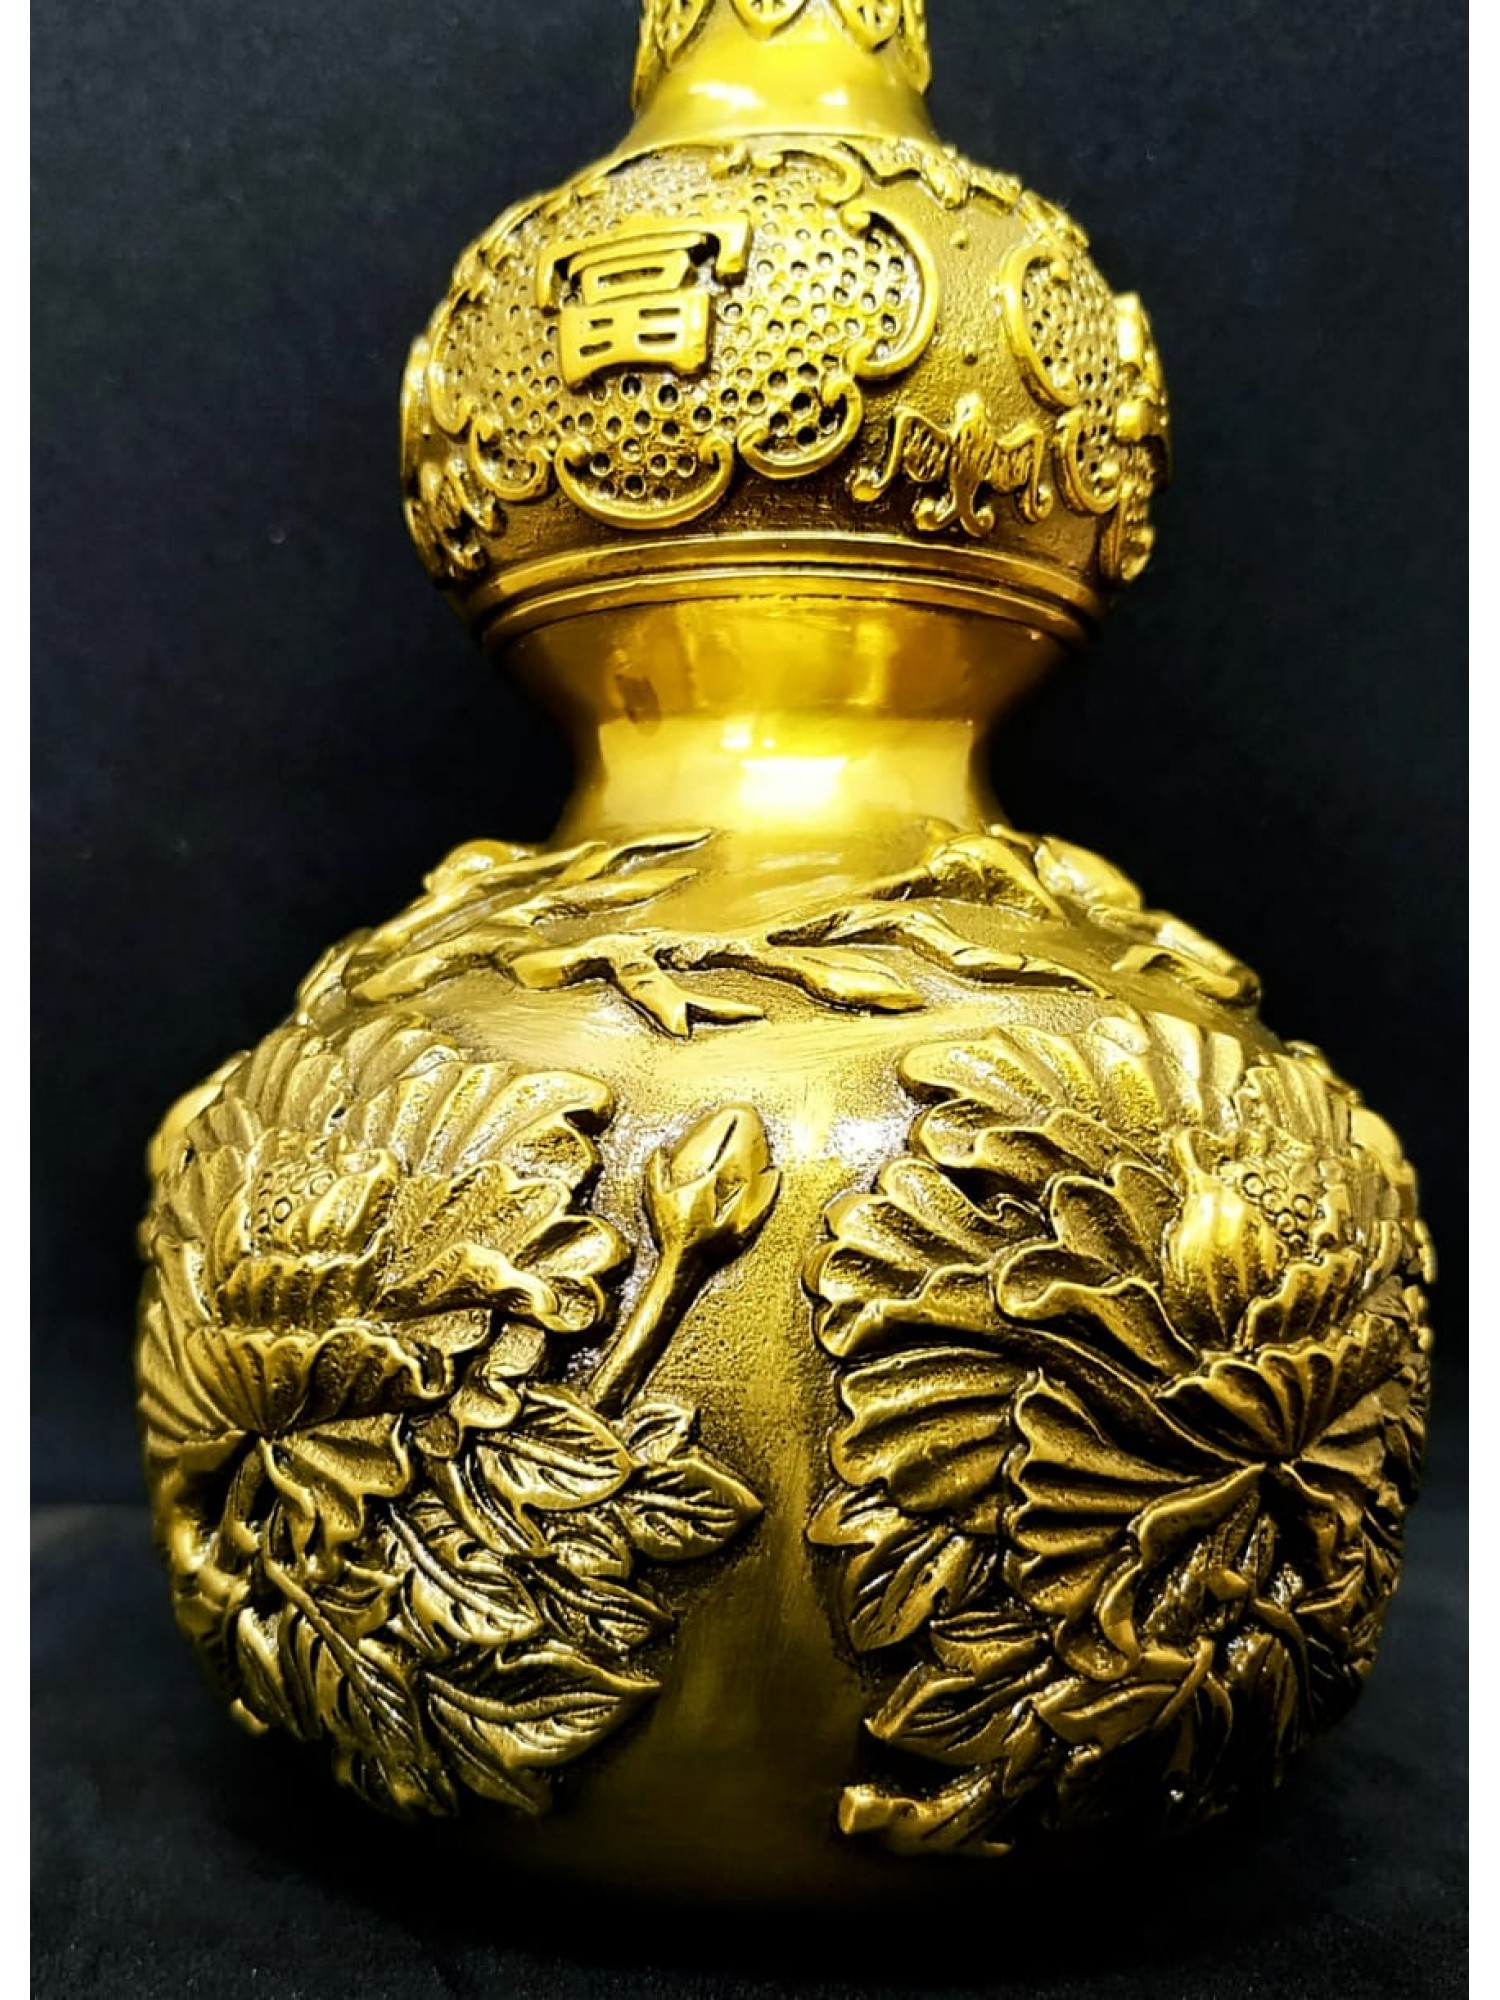 Тыква Улоу с пионами бронза желтая - популярный символ  здоровья и долголетия, защиты от недугов и болезней